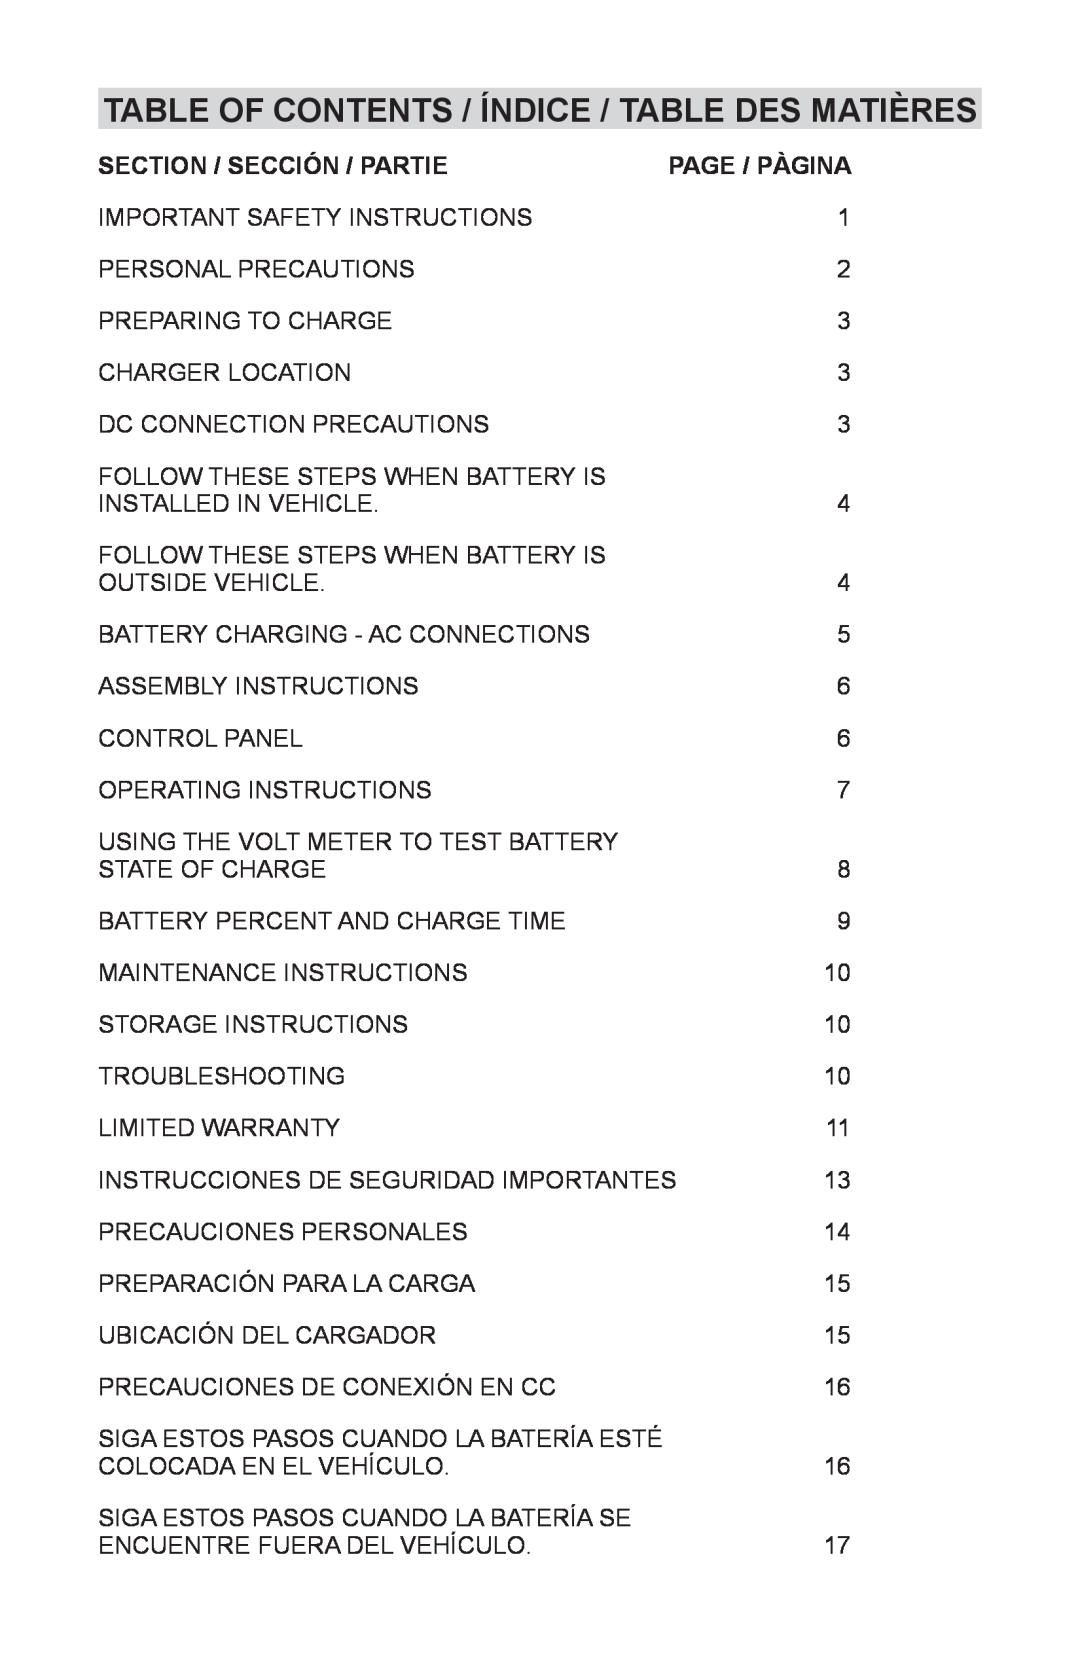 Schumacher NIN-812A, 94085894 Table of Contents / ÍNDICE / TABLE DES MATIÈRES, Section / SECCIÓN / Partie, Page / PÀGINA 